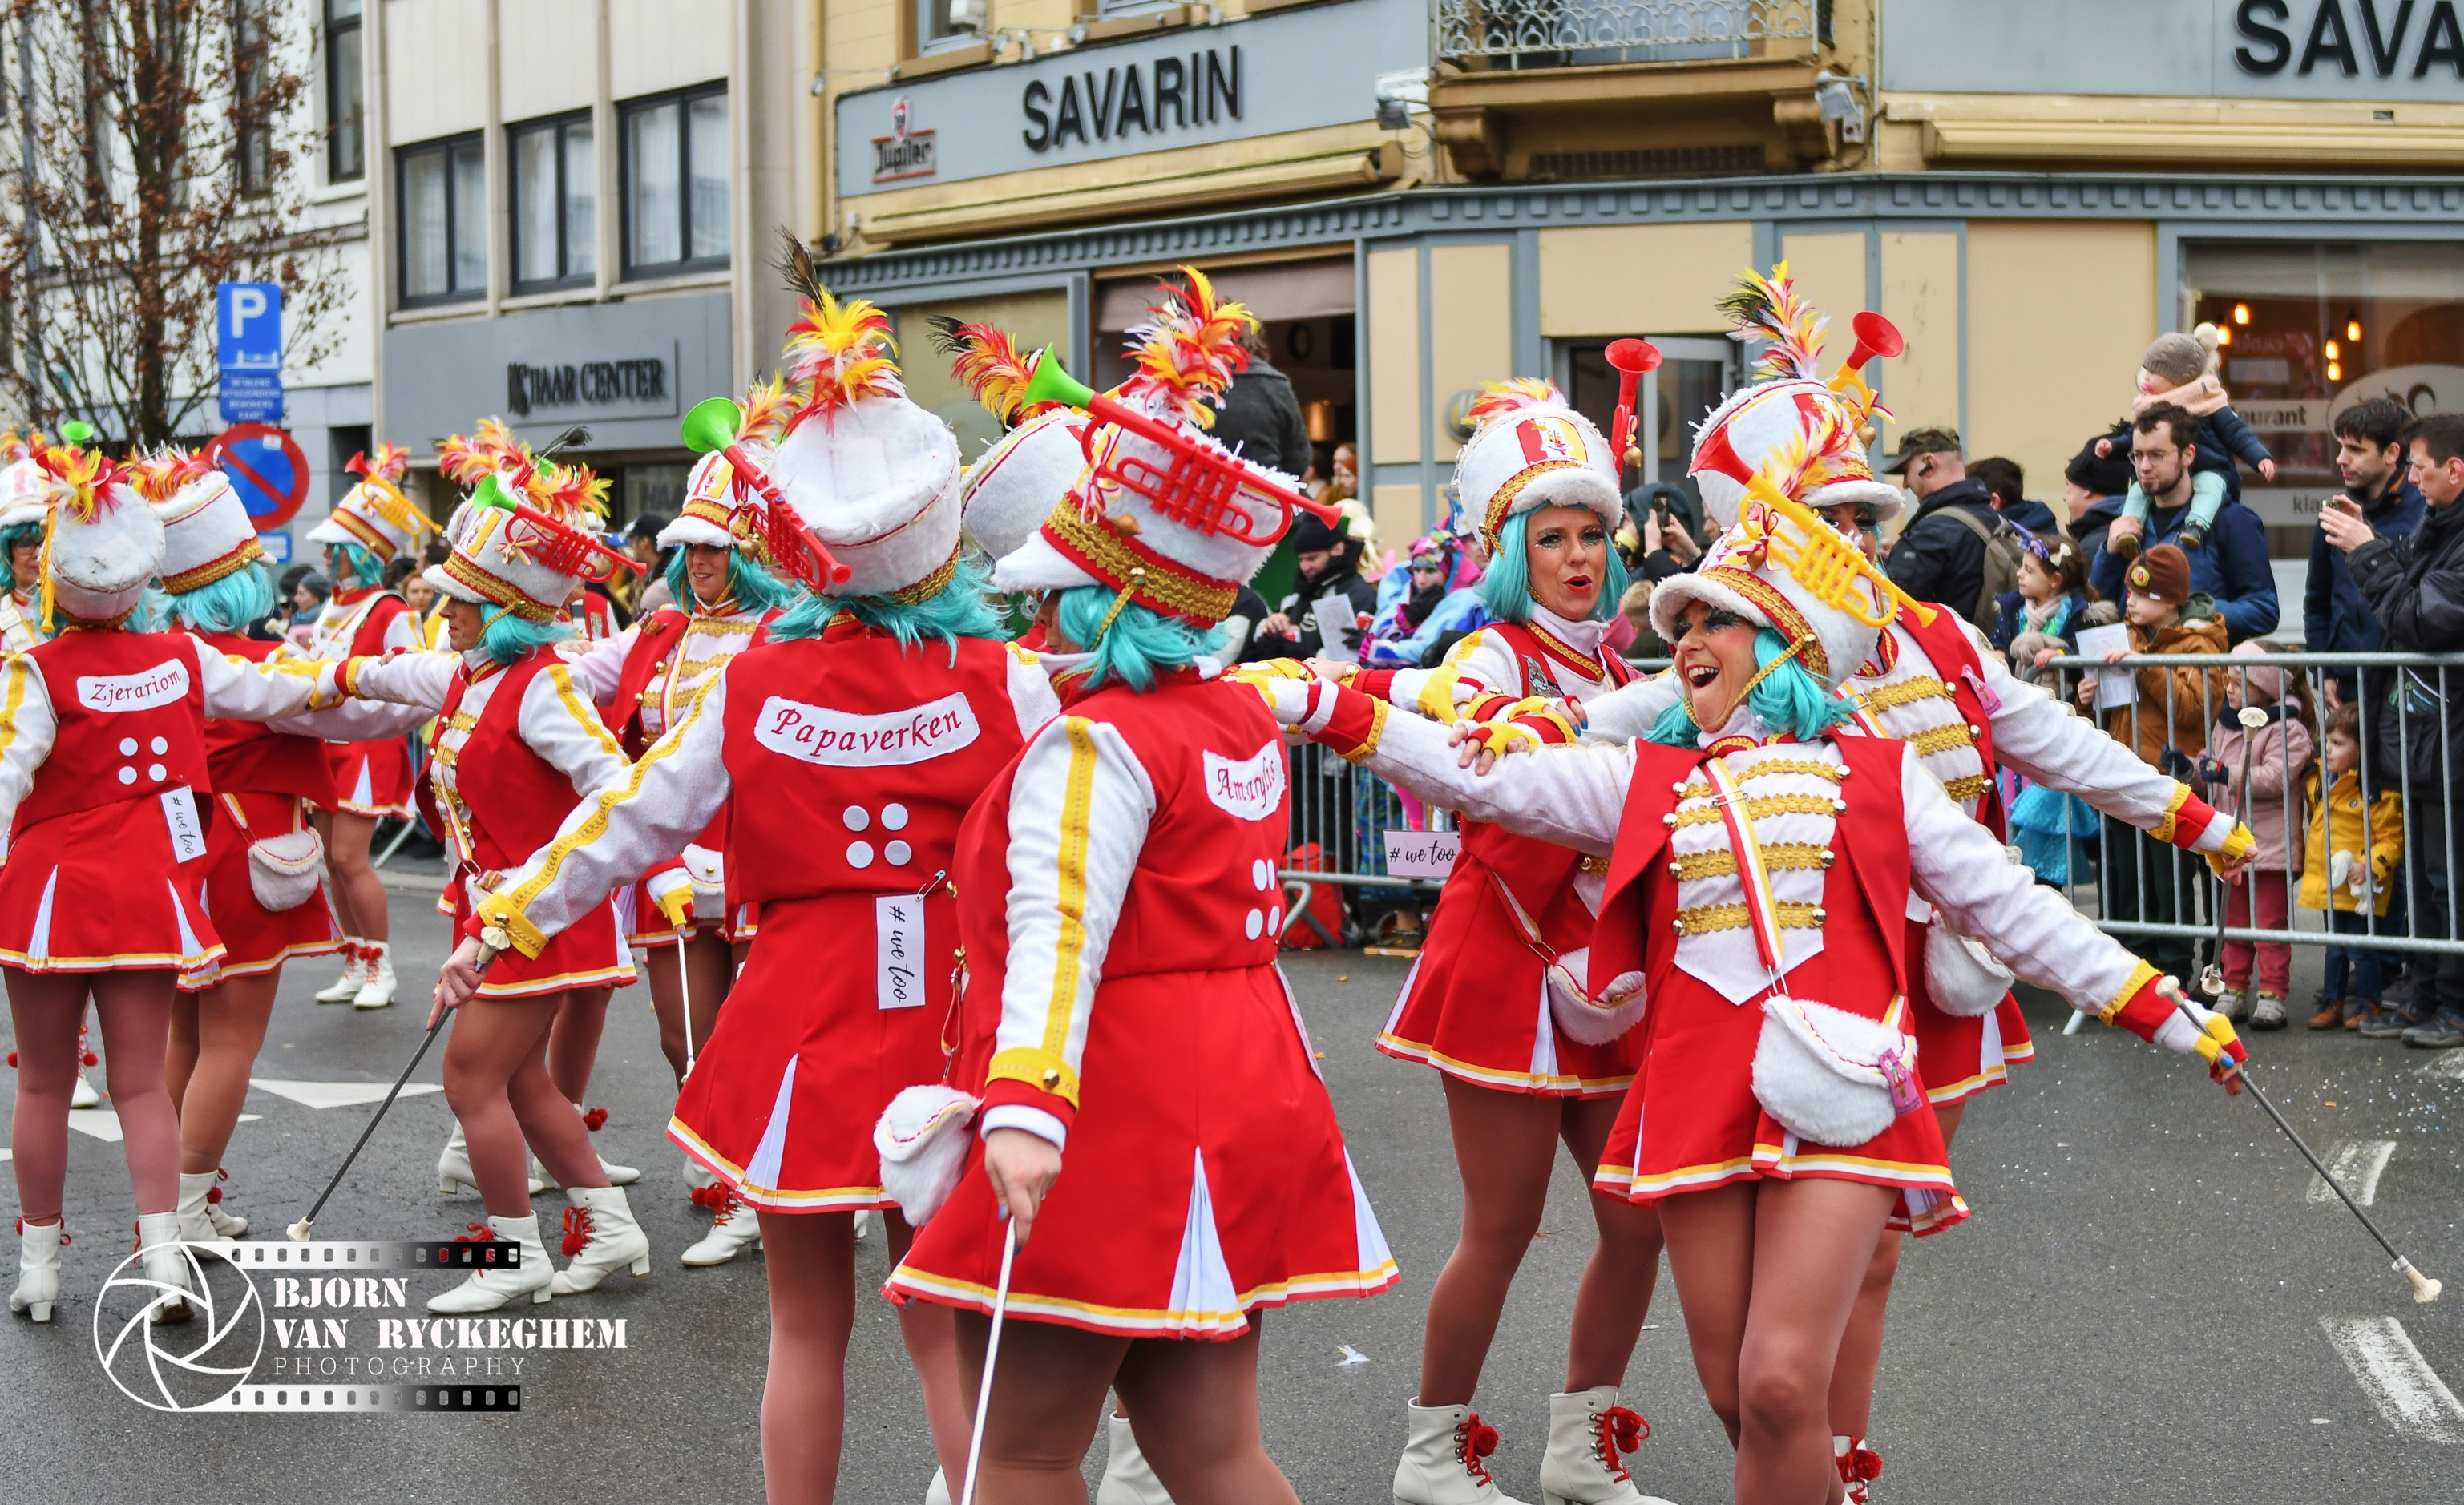 
Aalst Carnaval - Mazjoretten van Boeven de 40 voortaan 'vaste opener' in de stoet!
